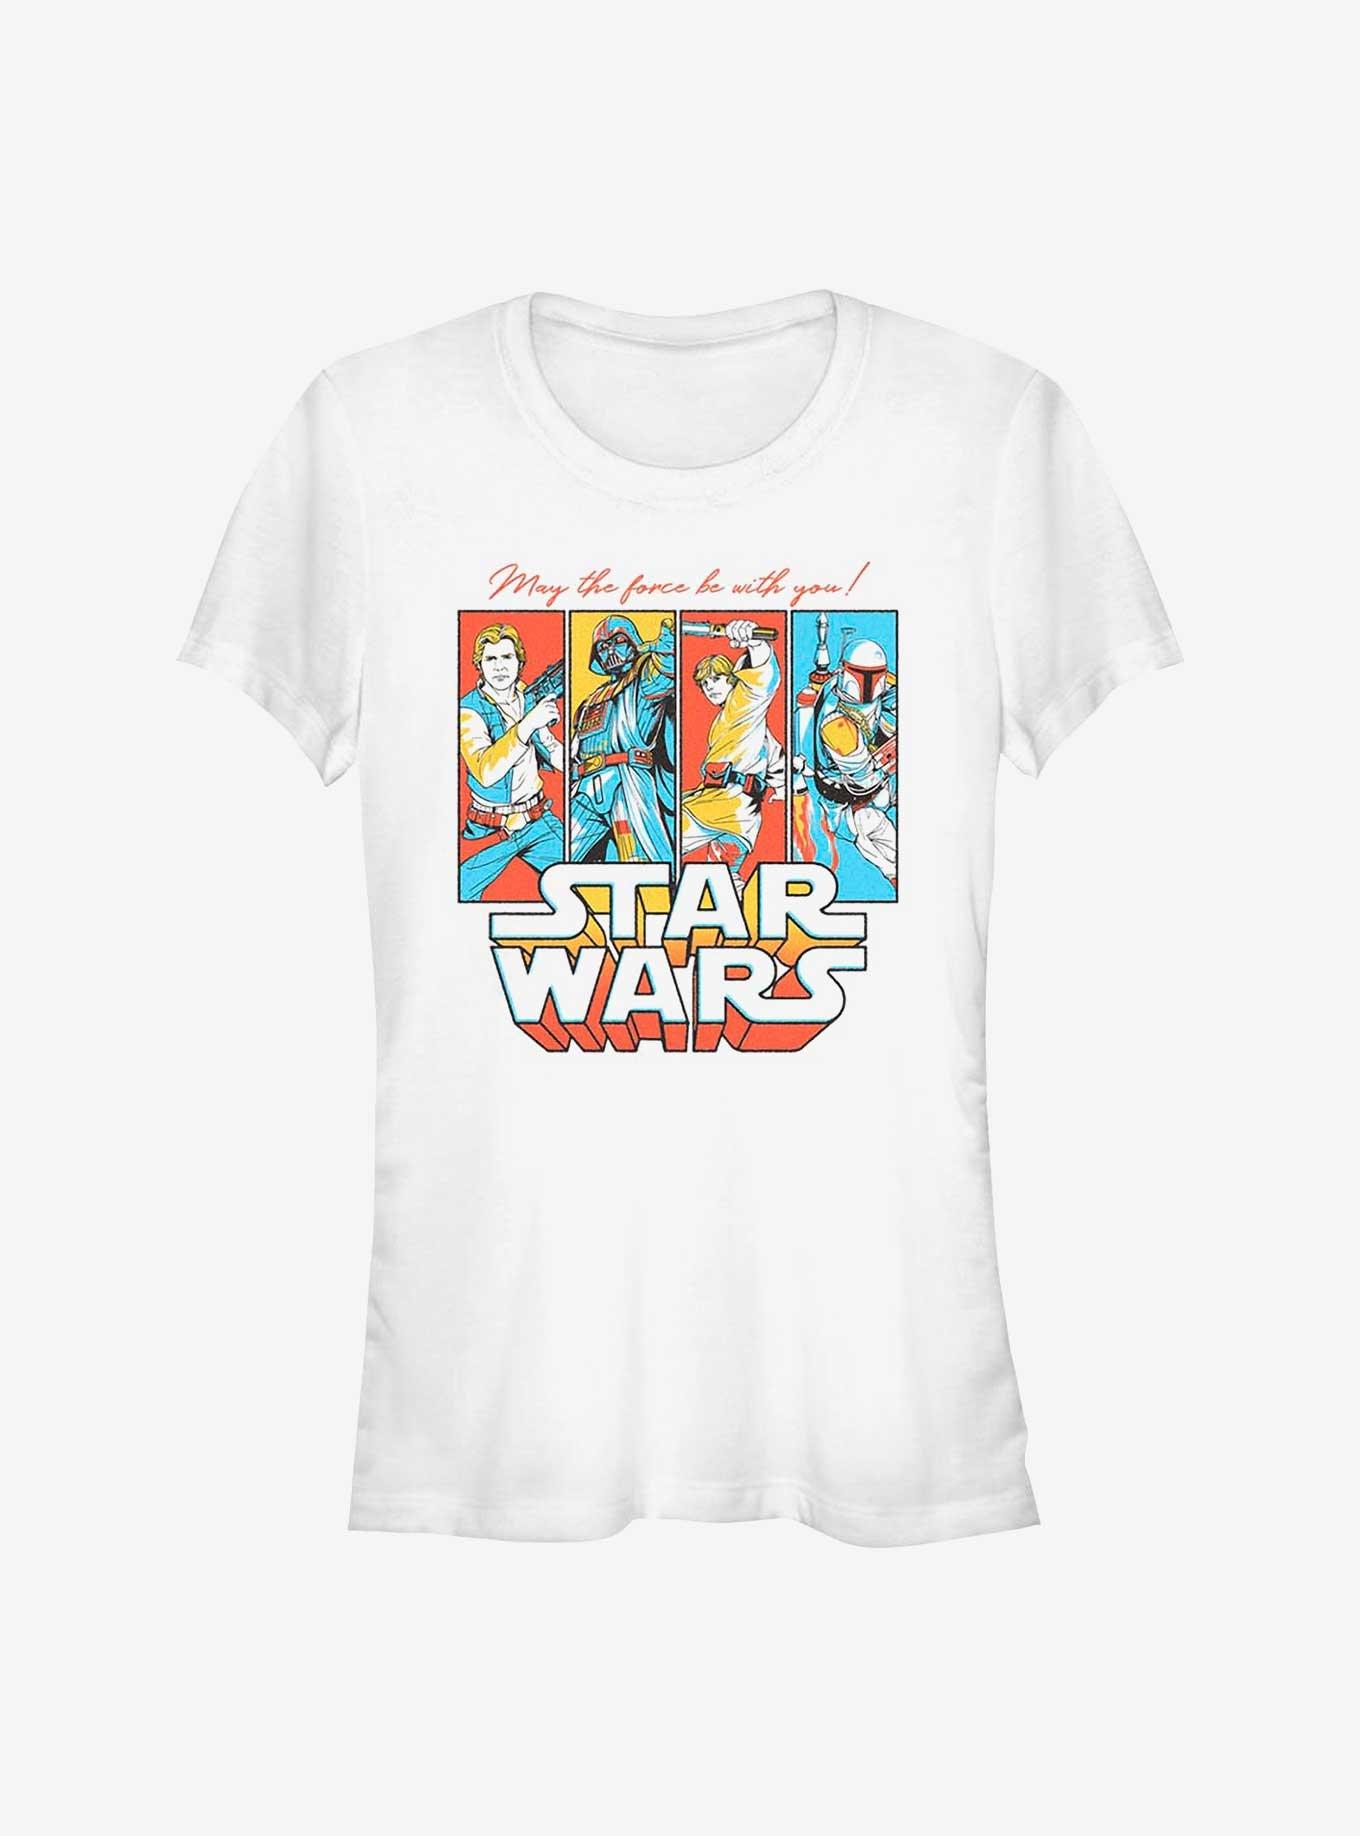 Star Wars Pop Culture Crew Girls T-Shirt, , hi-res